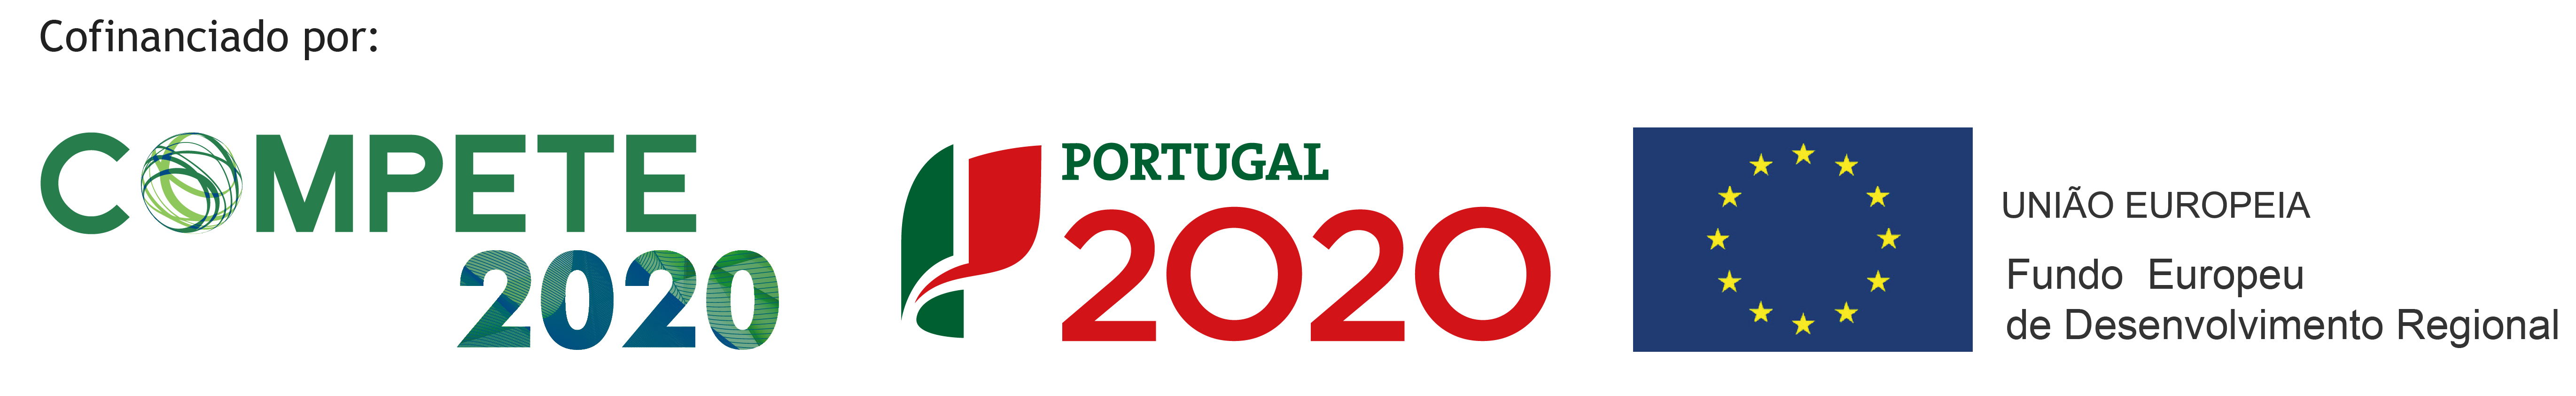 Portugal 2020 - Master Ferro